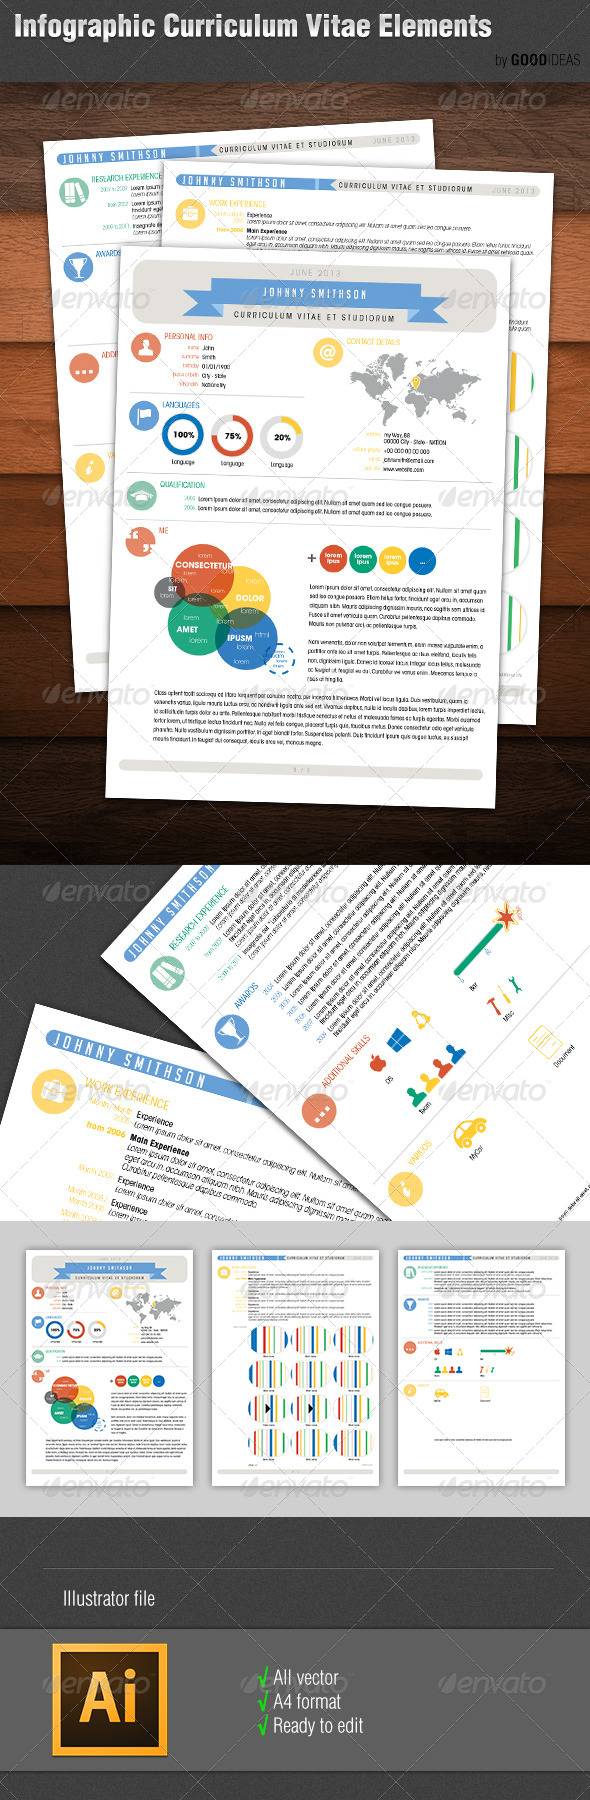 Infographic Curriculum Vitae Resume Elements - http://graphicriver.net/item/infographic-curriculum-vitae-resume-elements/5238032?WT.ac=search_thumb&WT.z_author=GoodIdeas